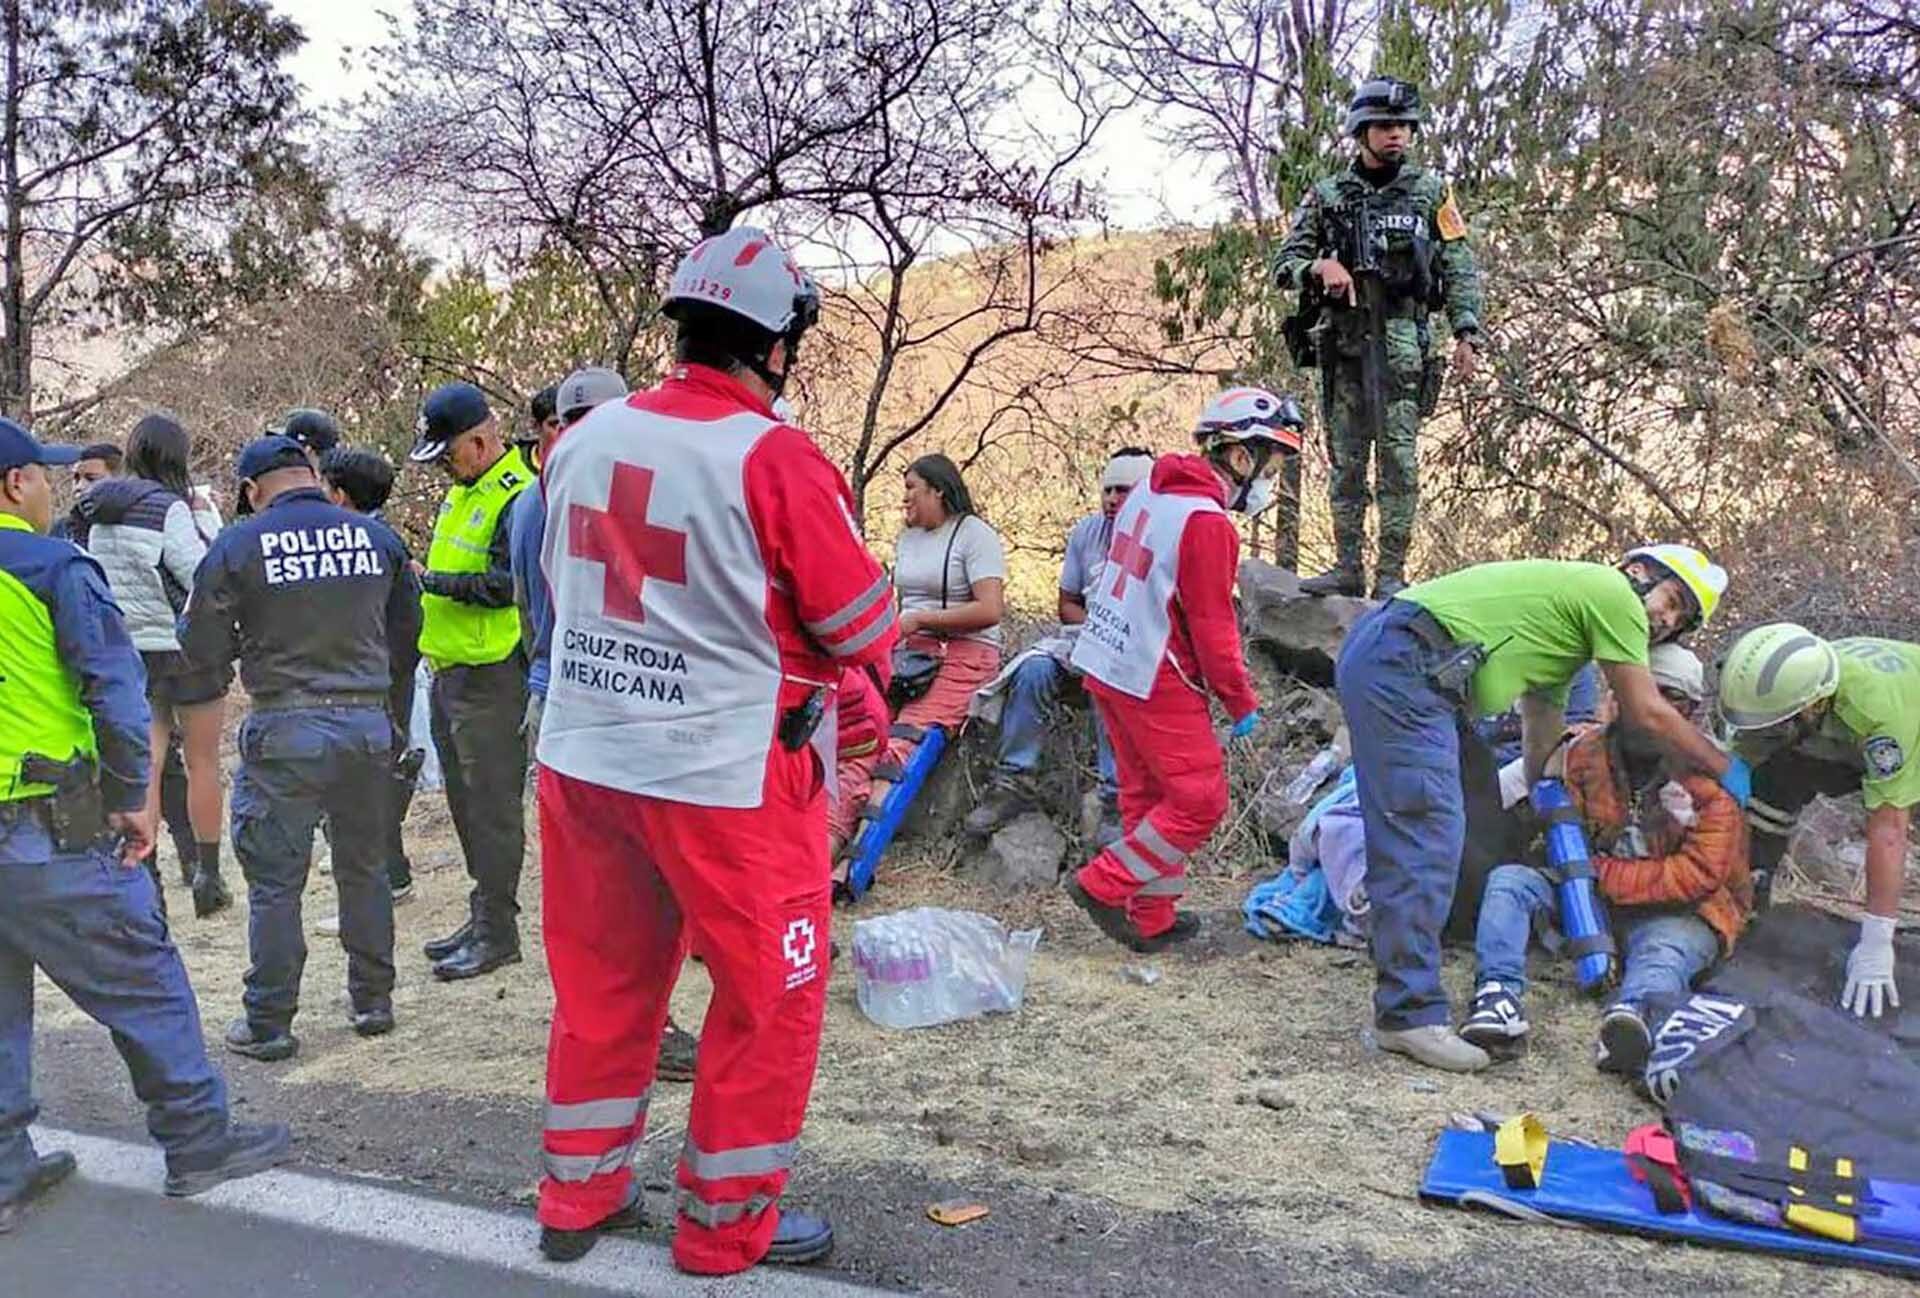 บัสเสียหลักพลิกคว่ำ “คร่า 14 ศพ” บาดเจ็บกว่า 30 ราย เม็กซิโกเร่งล่าคนขับรถหนี